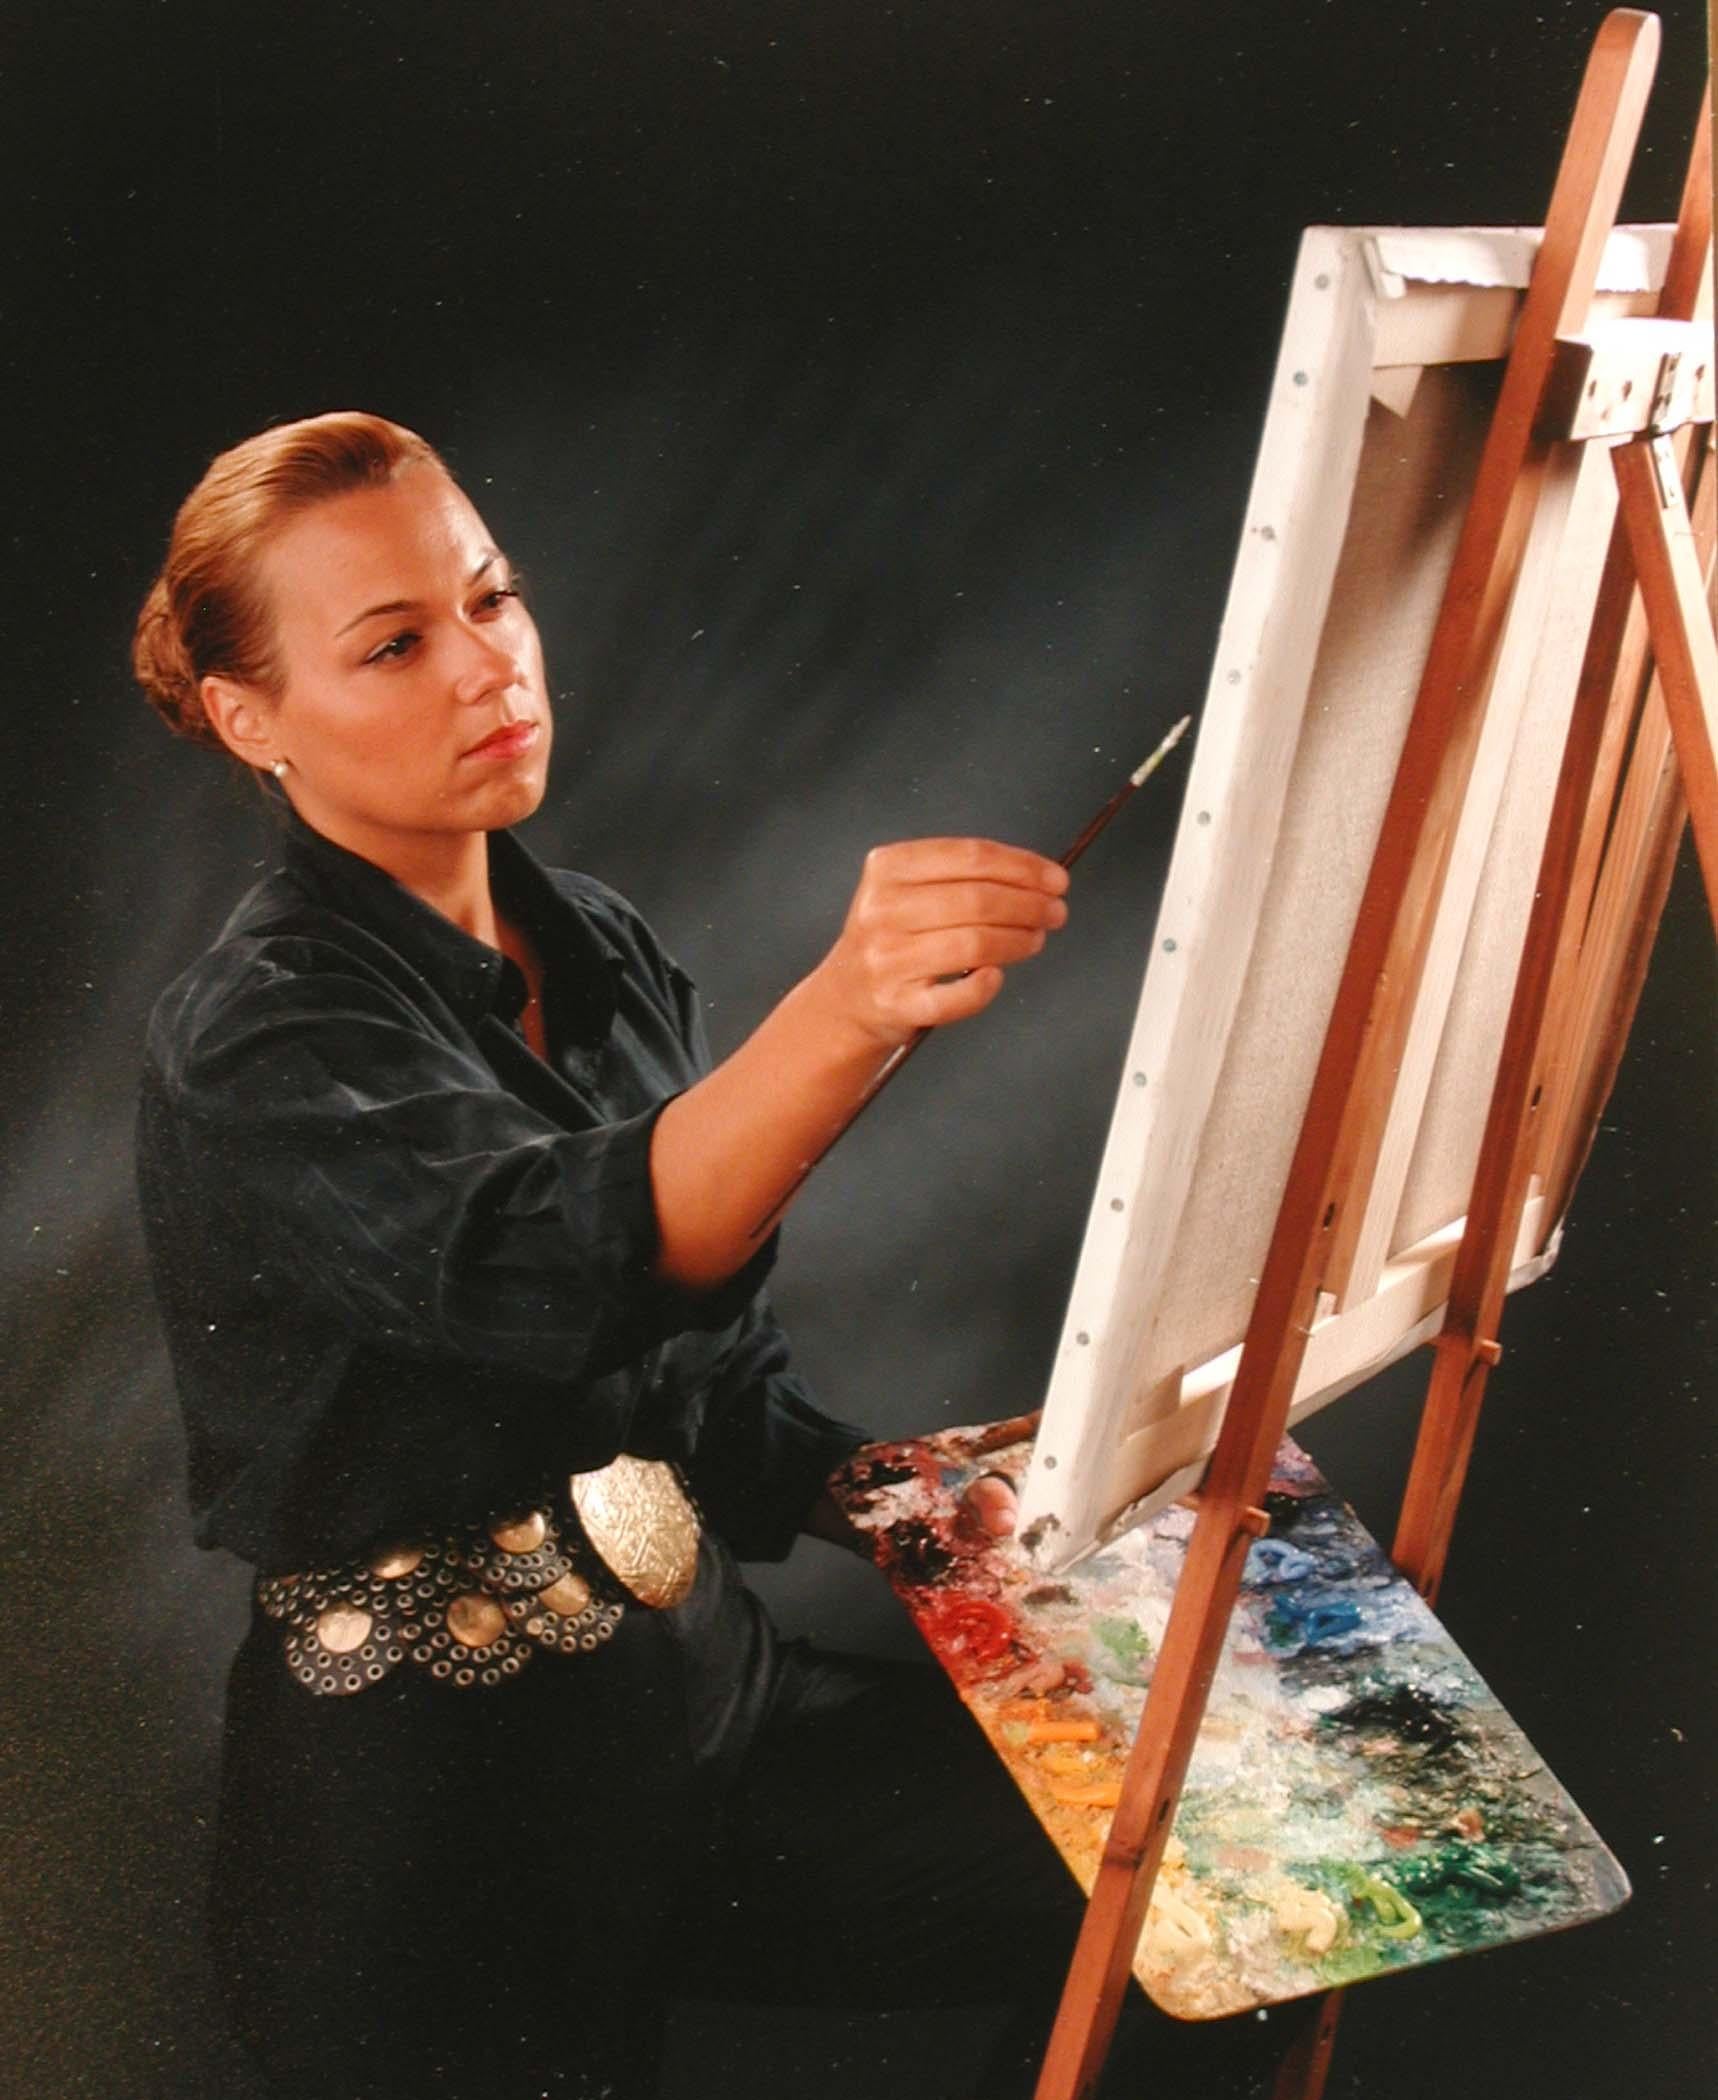 Les rêves deviennent réalité par Lélia Pissarro (née en 1963)
Acrylique, pigment et poudre d'or sur toile
100 x 75 cm (39 ³/₈ x 29 ¹/₂ pouces)

Cette œuvre est accompagnée d'un certificat d'authenticité de l'artiste. 

Une peinture puissante de la